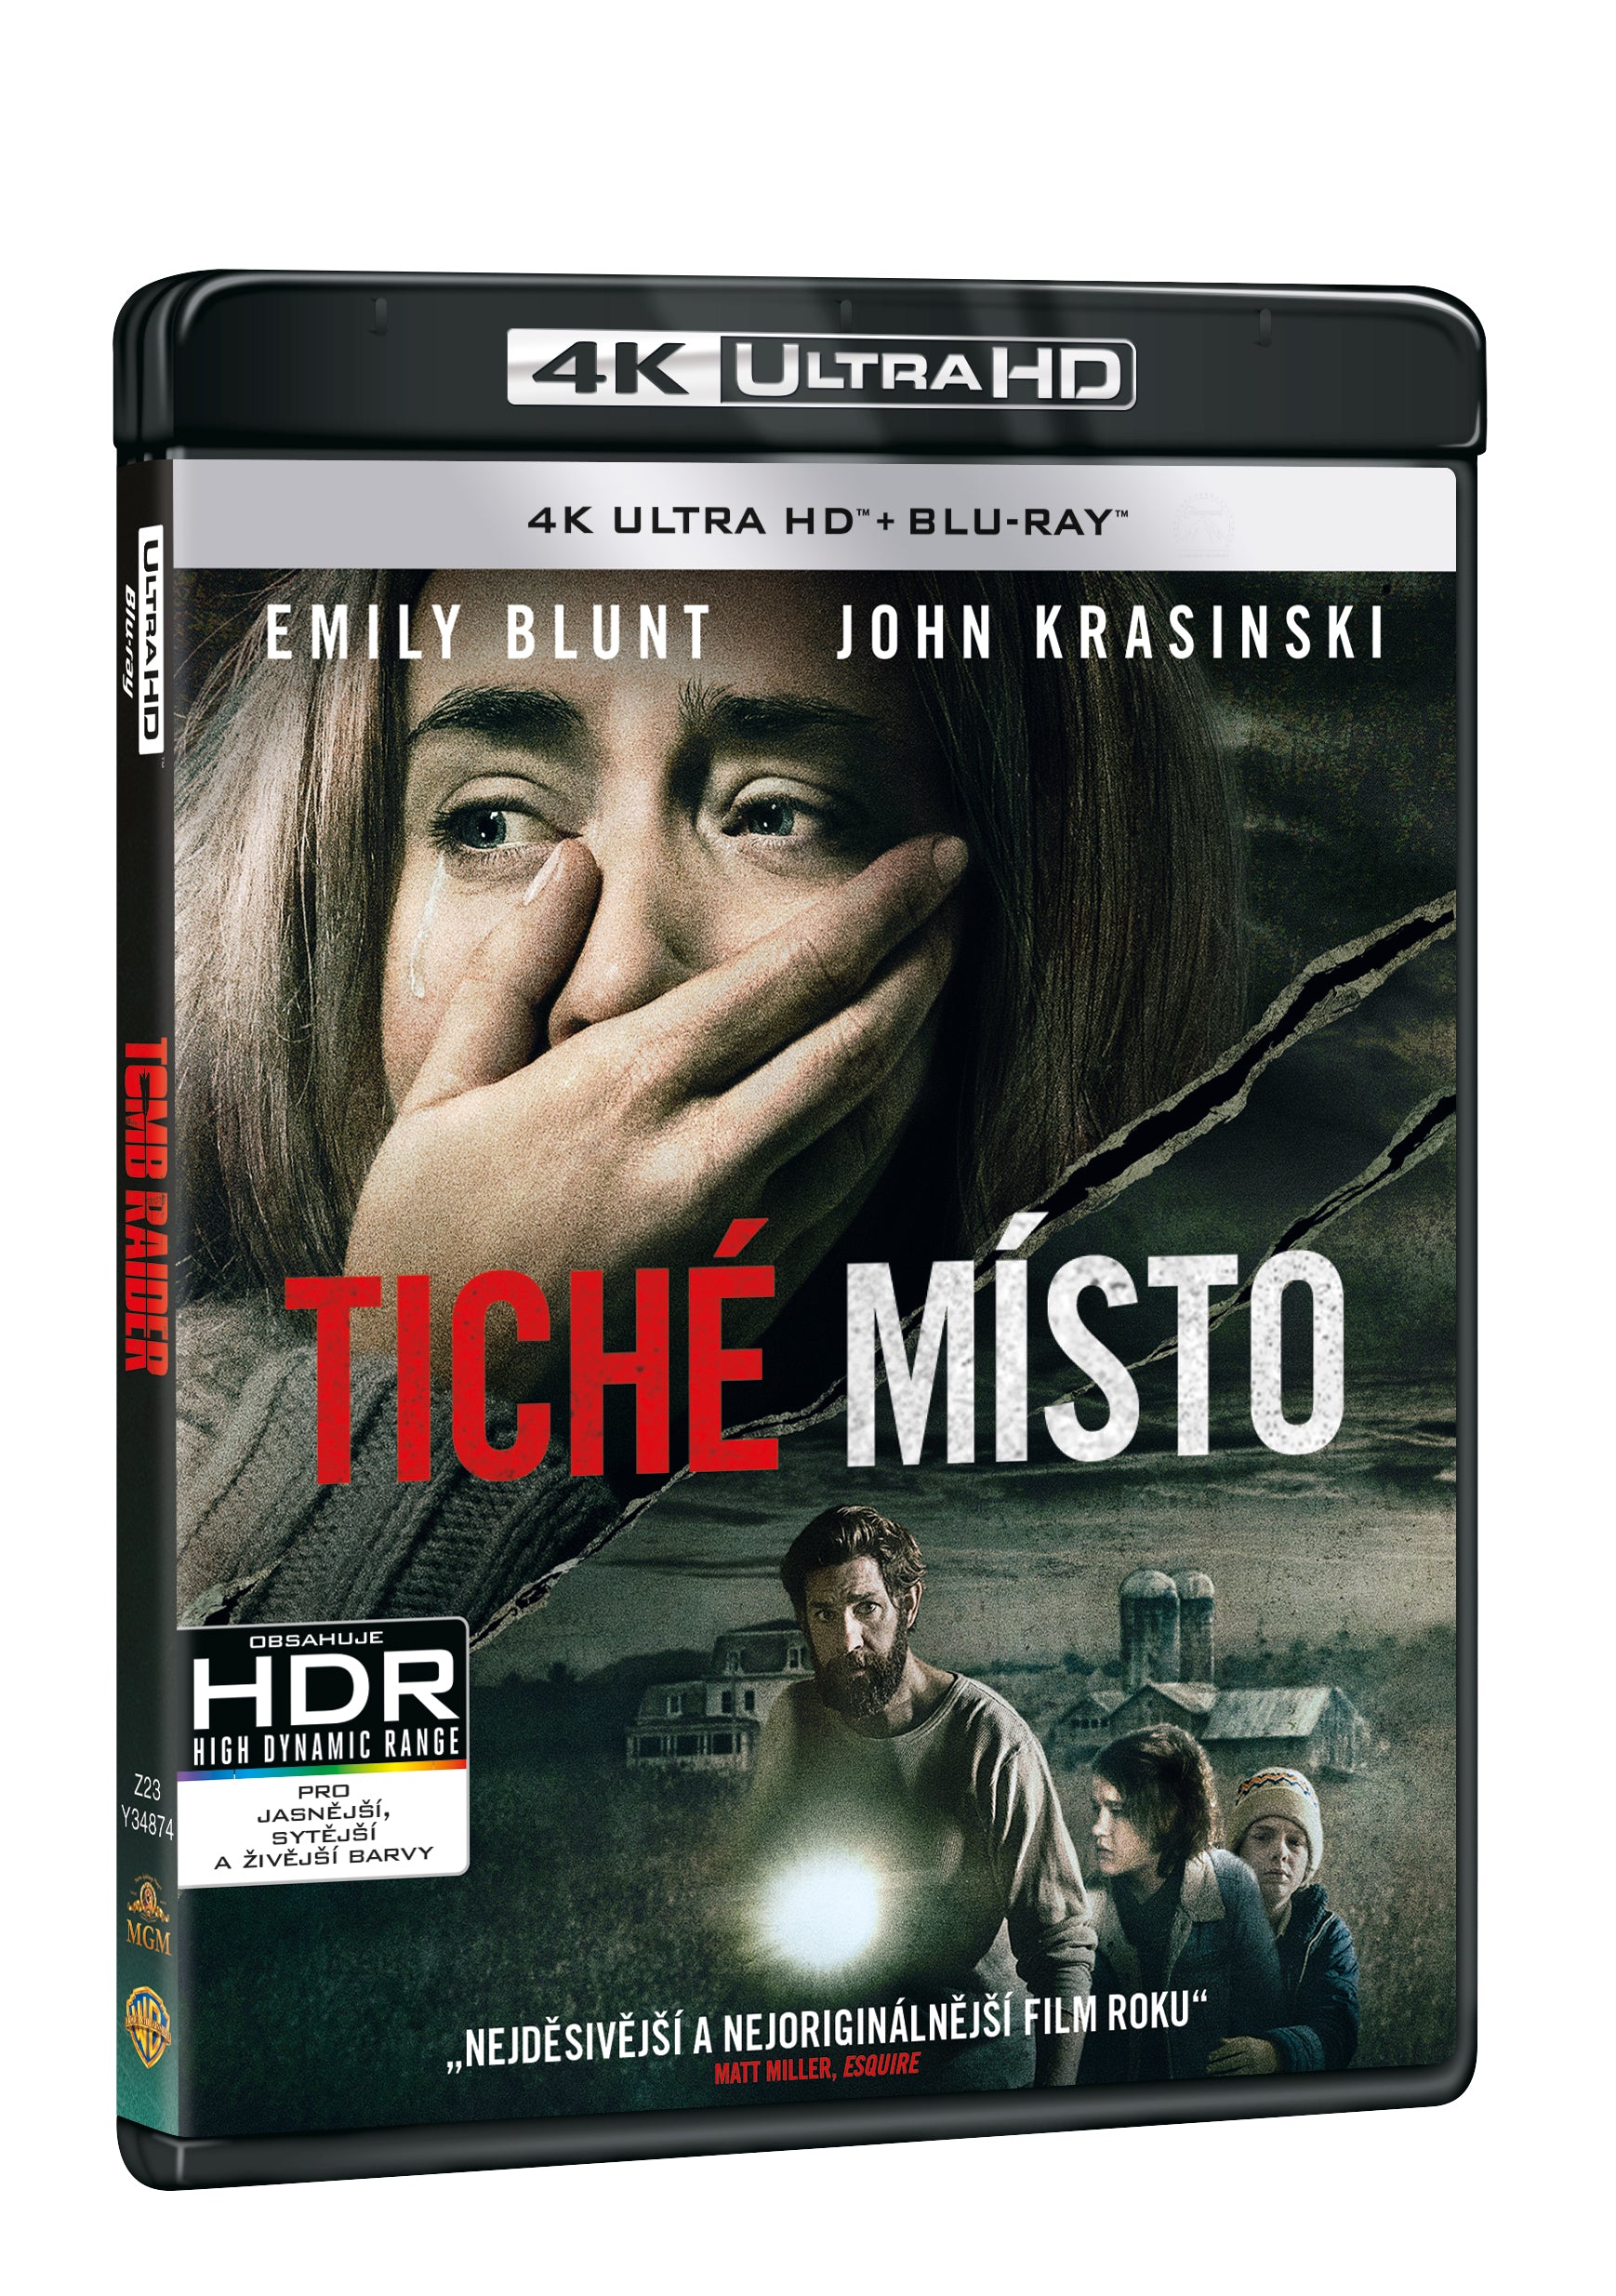 Tiche misto 2BD (UHD+BD) / A Quiet Place - Czech version